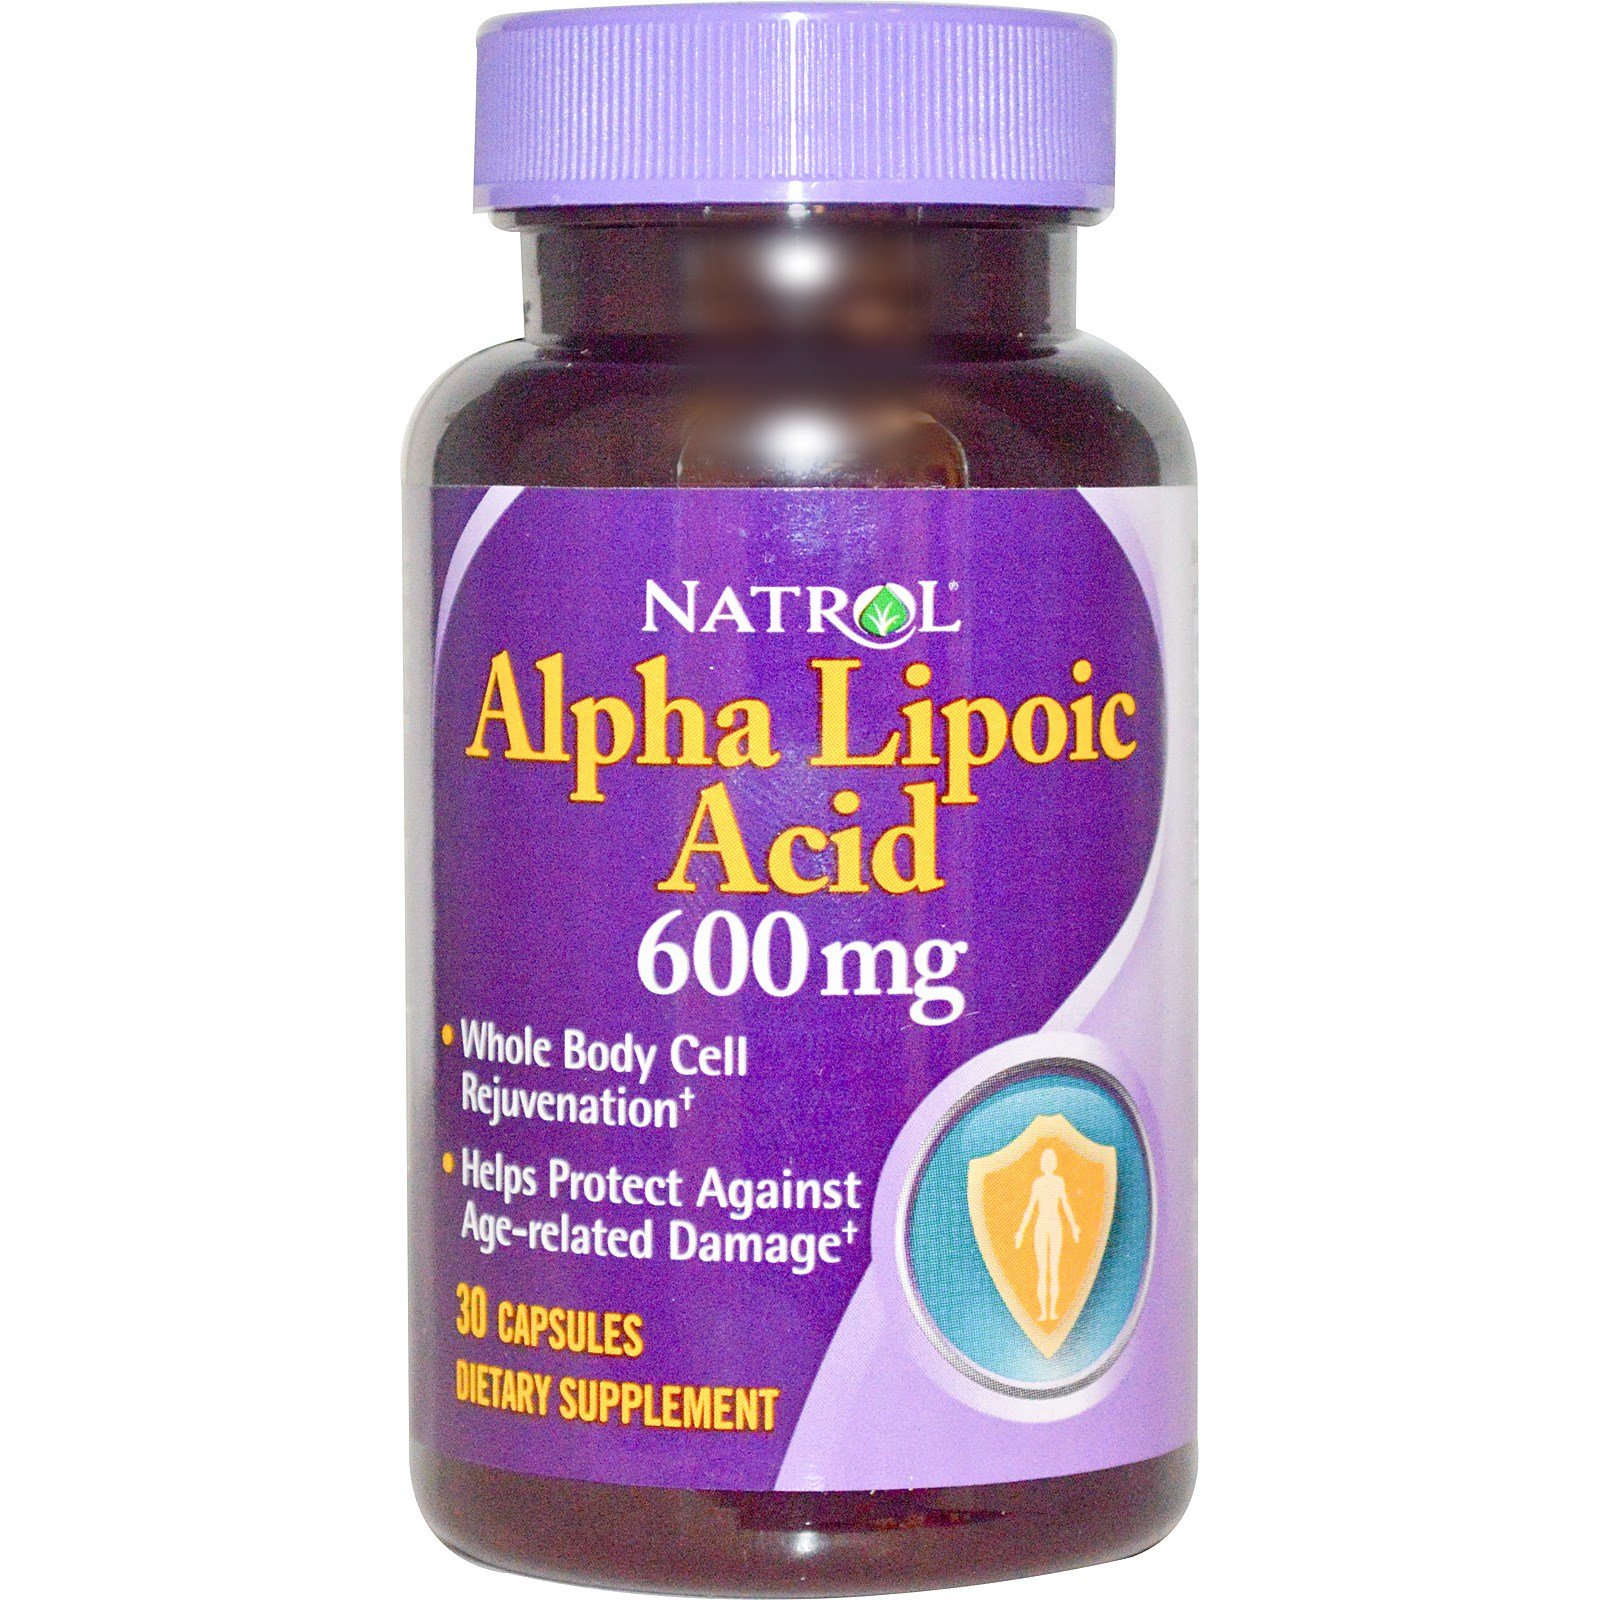 Alpha Lipoic Acid 600 mg, 30 шт, Natrol. Альфа-липоевая кислота. Поддержание здоровья Регуляция углеводного обмена Регуляция жирового обмена 